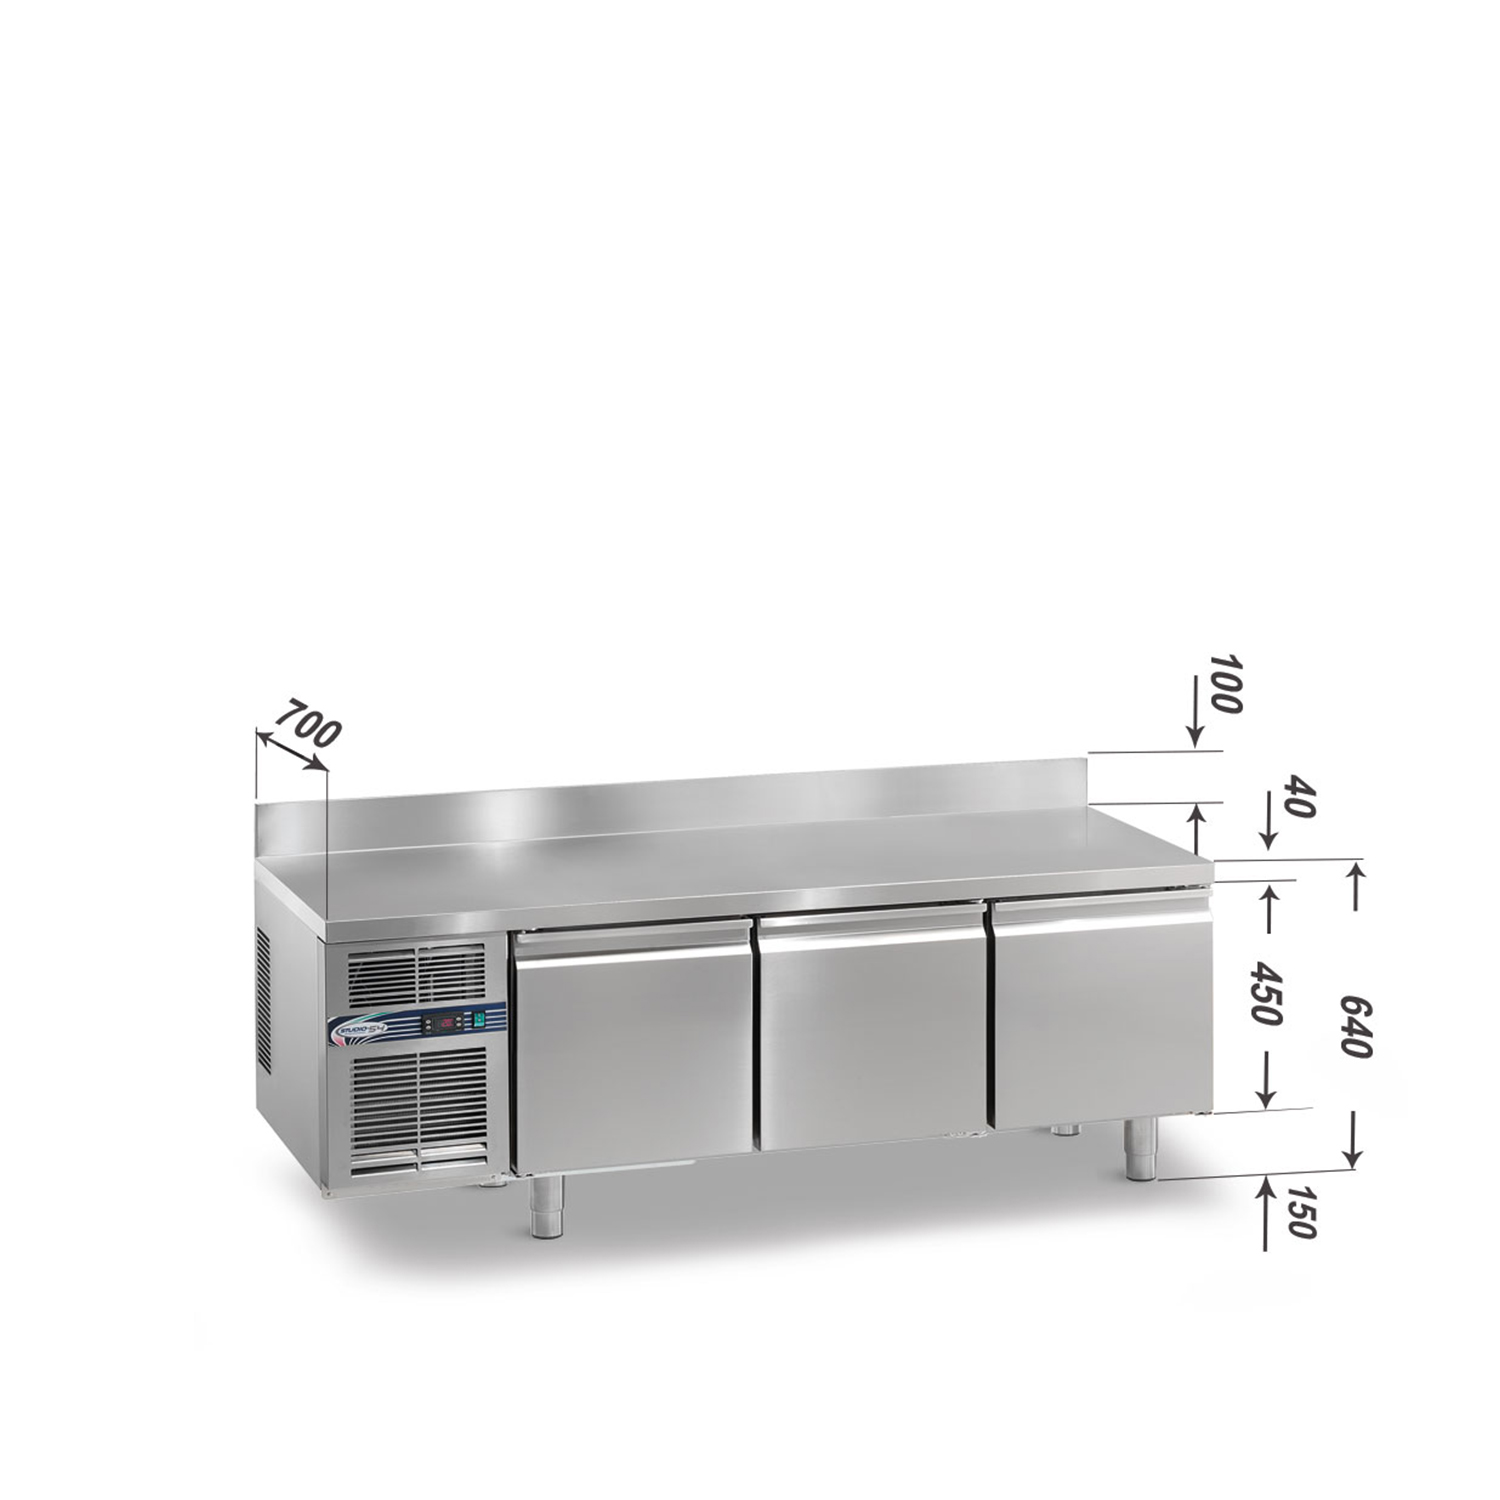 Kühltisch DAIQUIRI Top Line H450 GN 1/1, B 1740  x T 700 x H 640+100 mm, 3 Kühlfächer, Arbeitsplatte mit Aufkantung